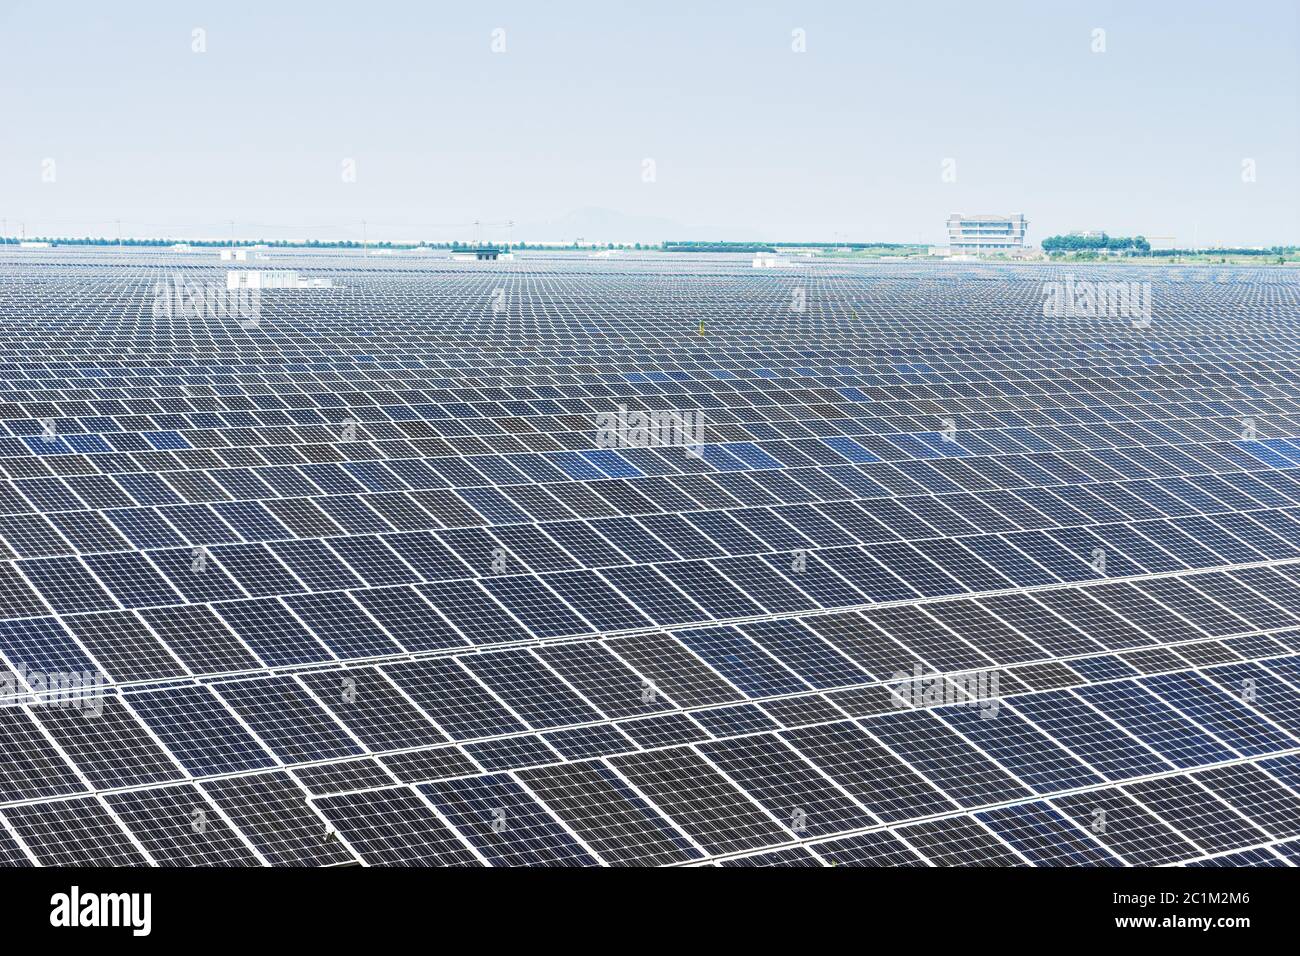 Sonnenkollektoren, Photovoltaik, alternative Stromquelle - Konzept der nachhaltigen Ressourcen Stockfoto